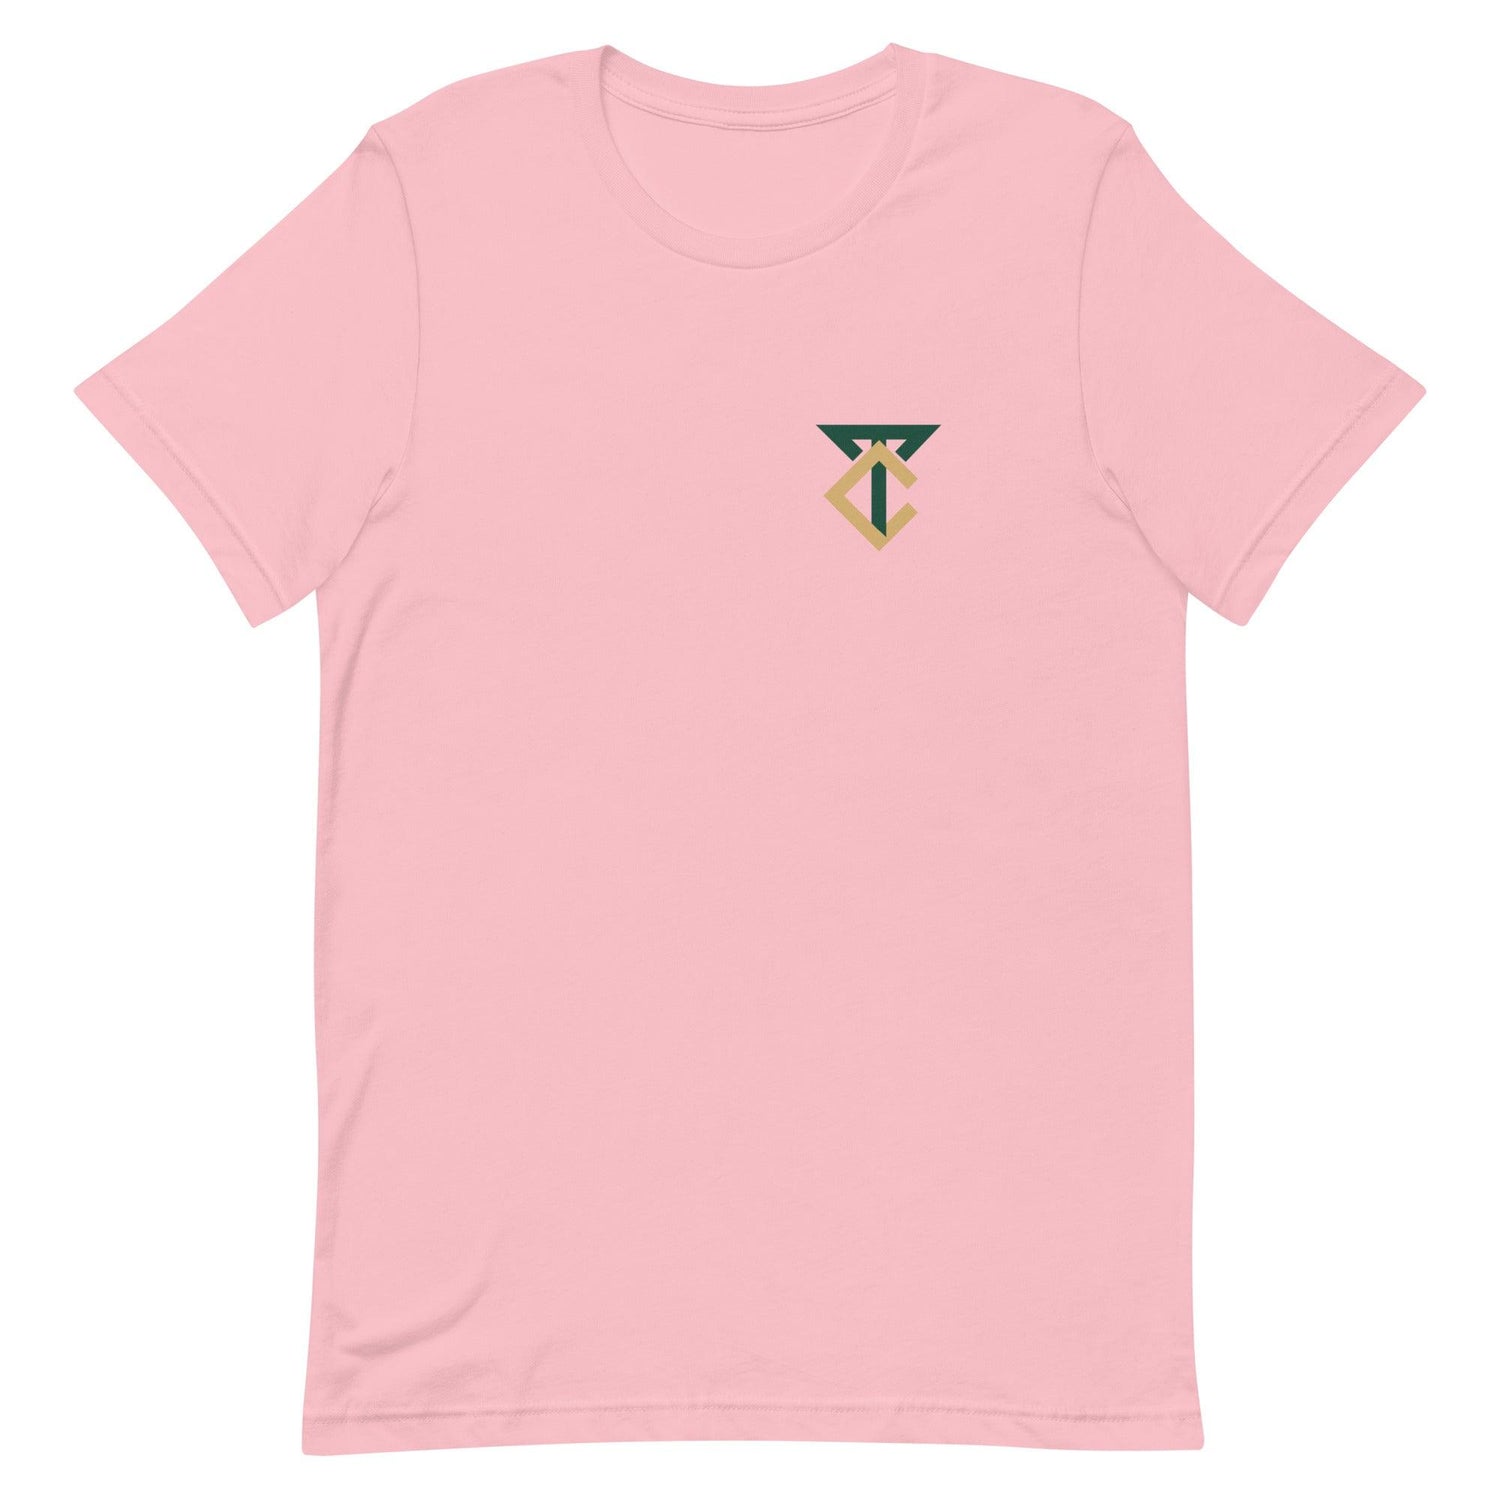 Trey Creamer "Essential" t-shirt - Fan Arch